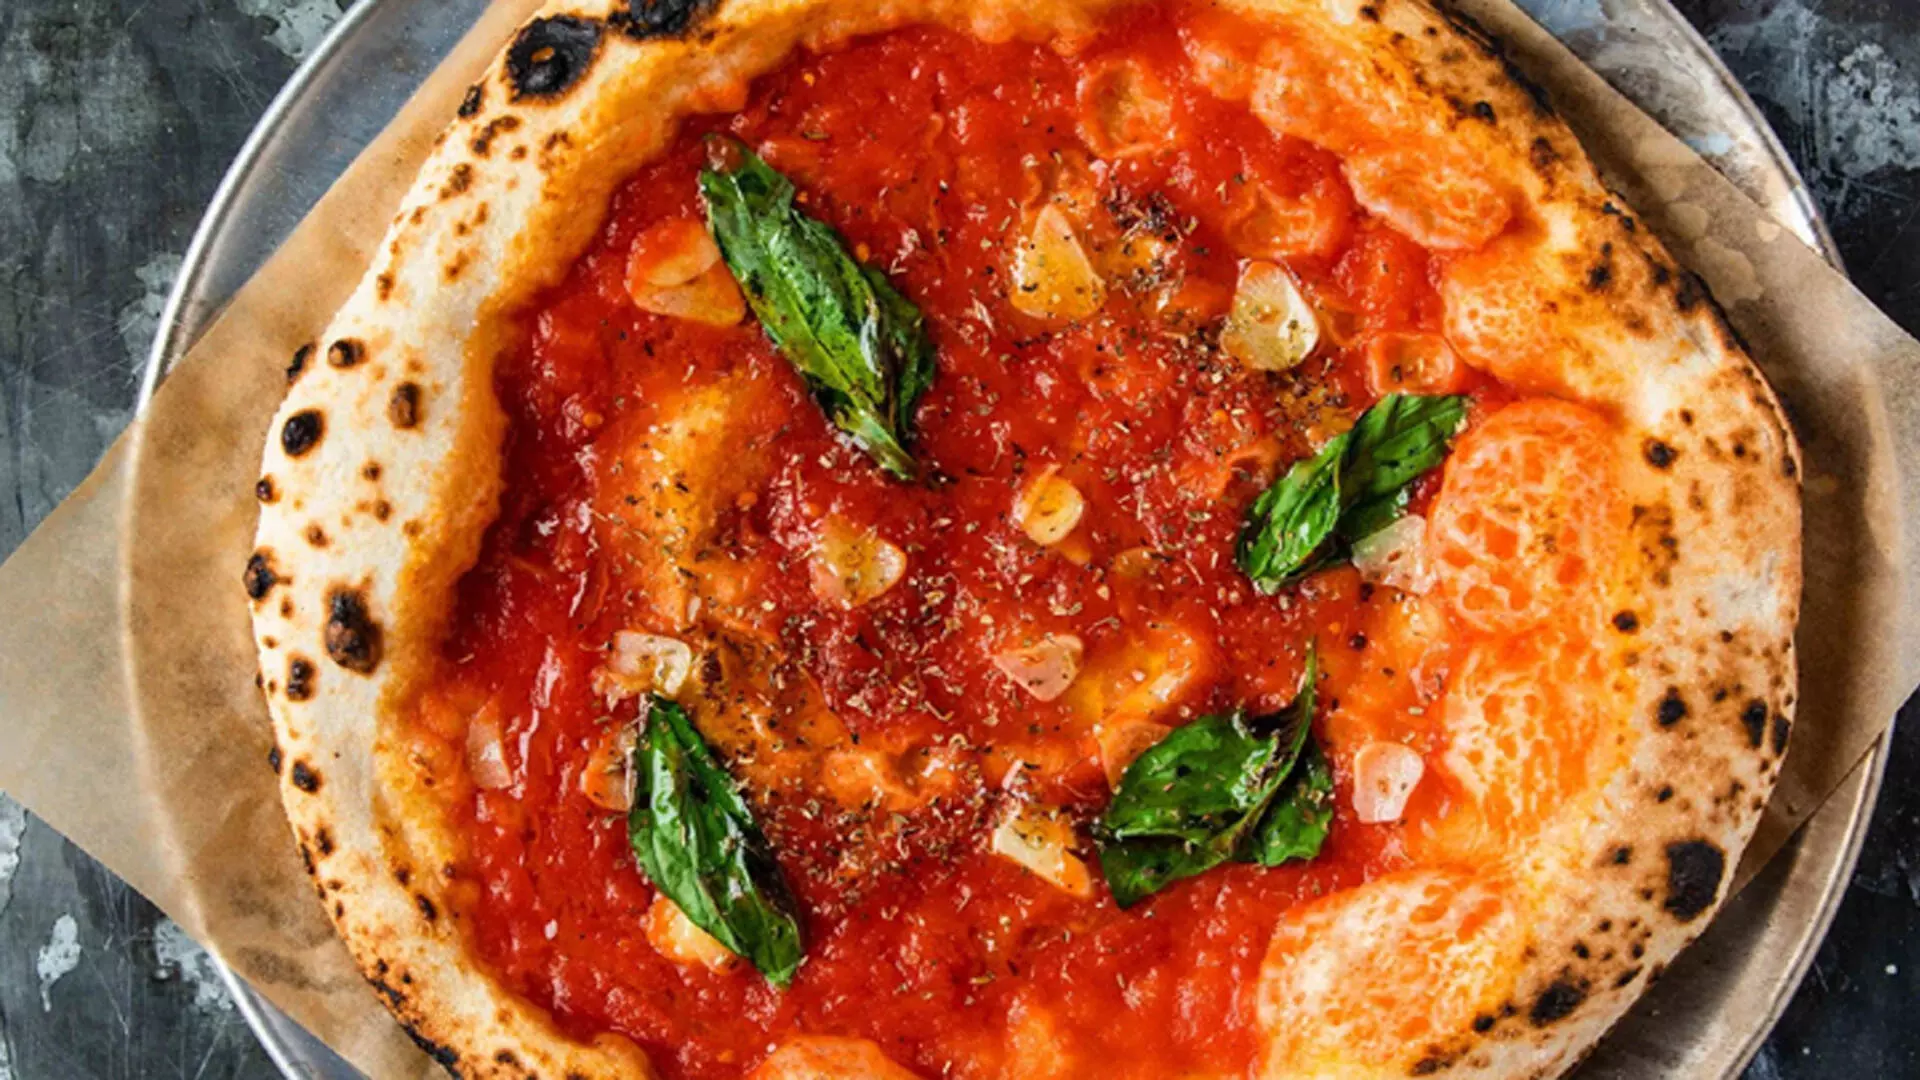 पिज़्ज़ा मैरिनारा इटली का एक स्वादिष्ट व्यंजन